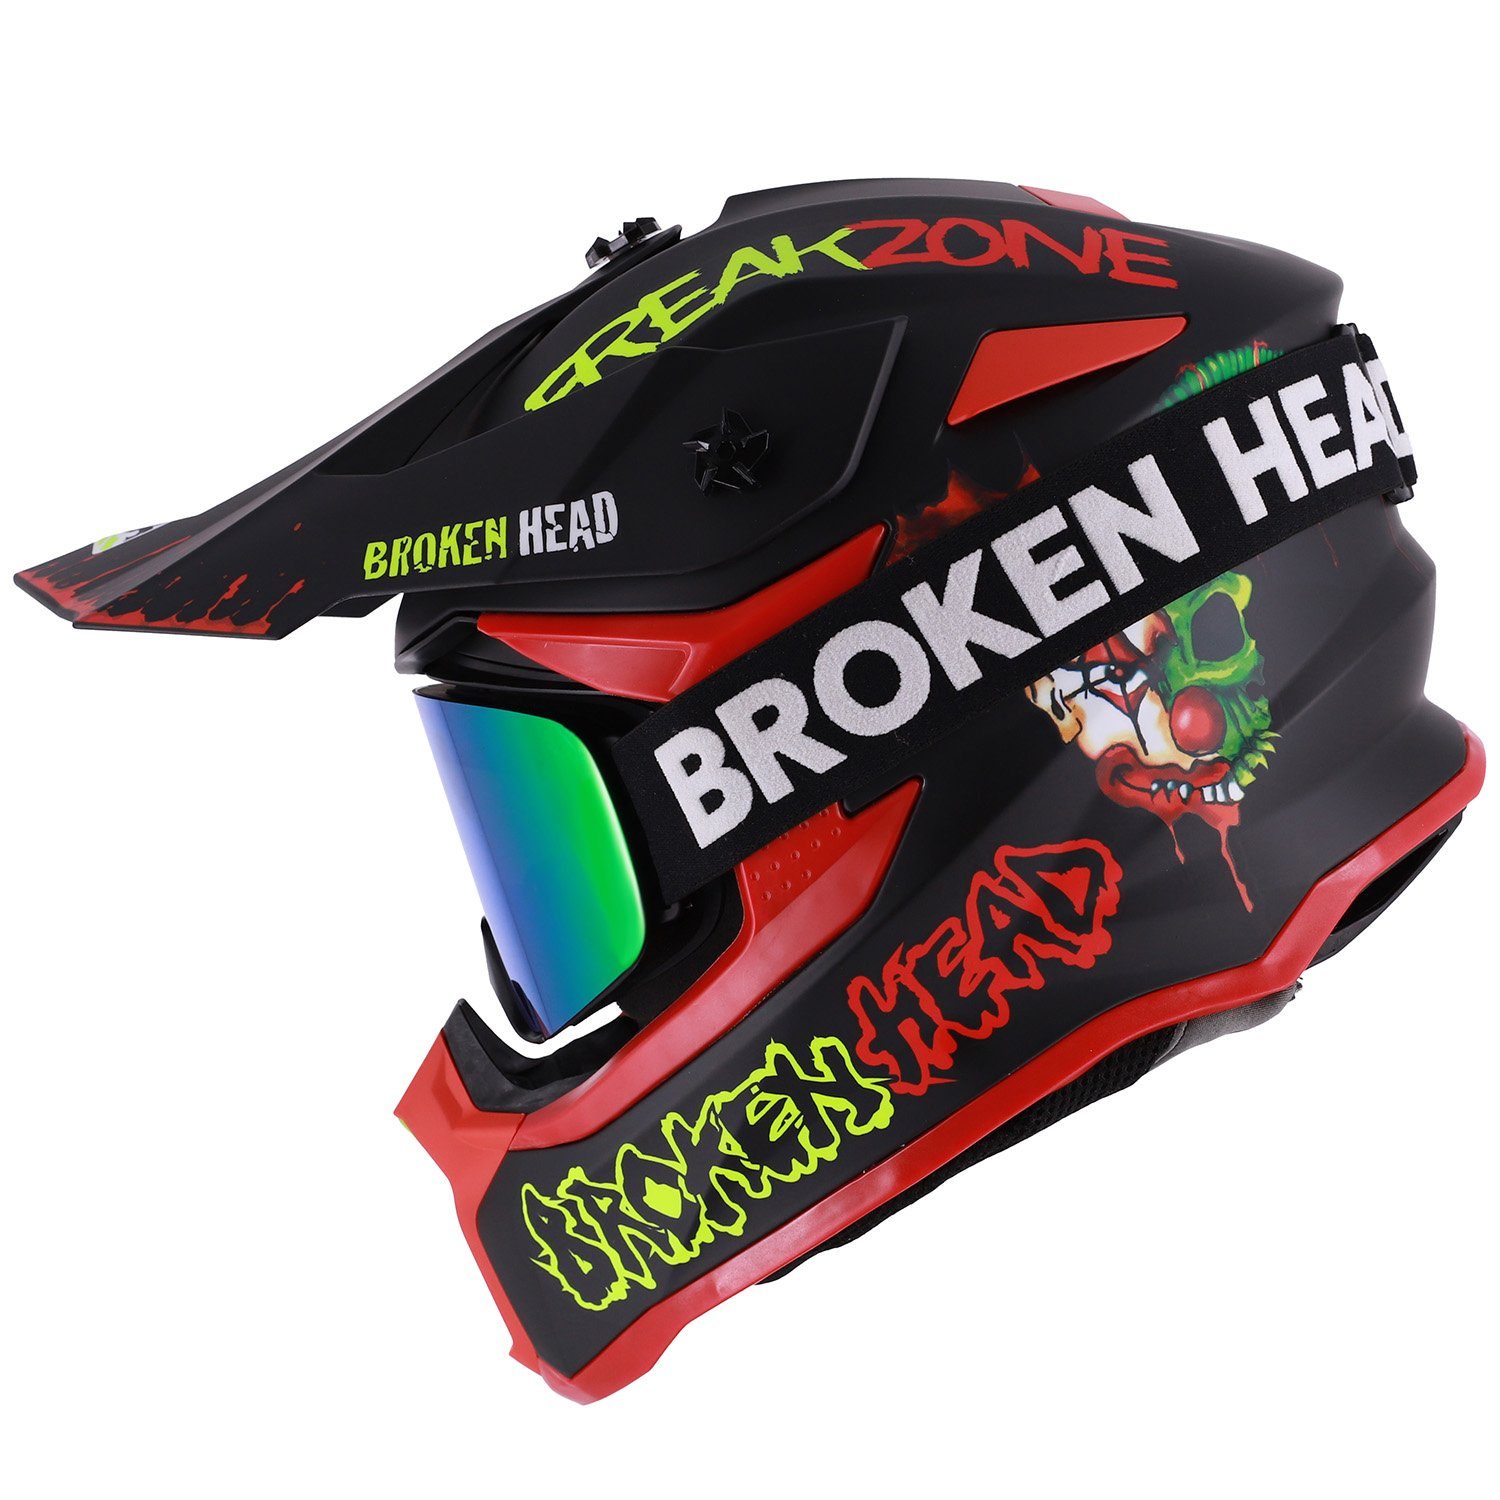 Broken Head Motocrosshelm Freakzone Schwarz-Rot-Grün (Mit MX-Struggler Grün), Mit verrücktem Design!